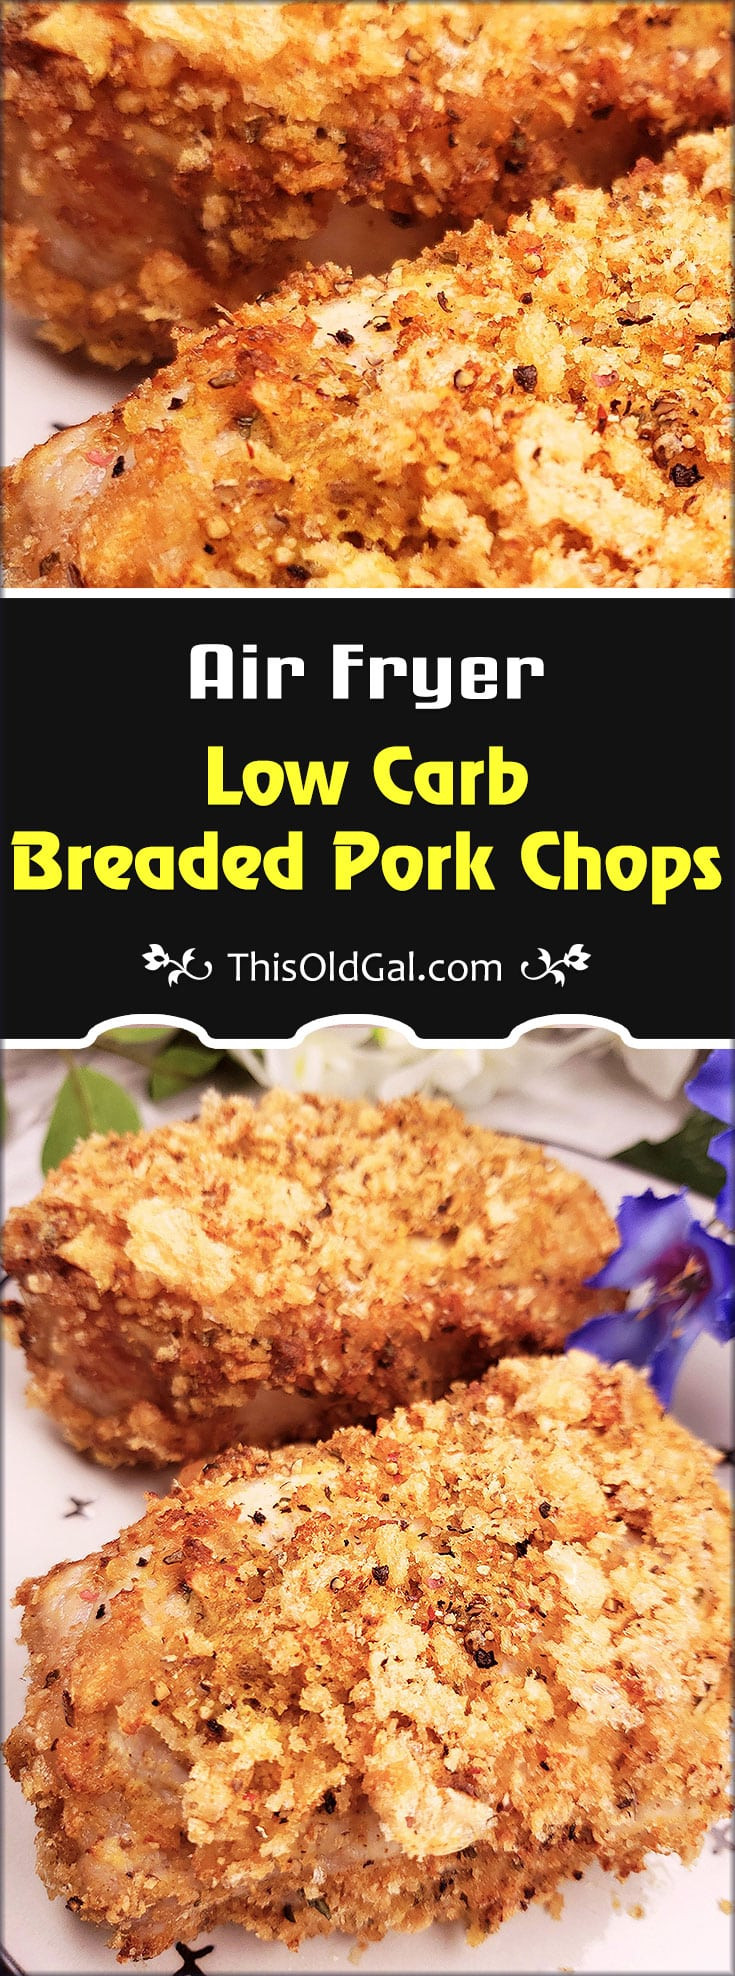 Breaded Pork Chops In Air Fryer
 Low Carb Breaded Pork Chops in the Air Fryer